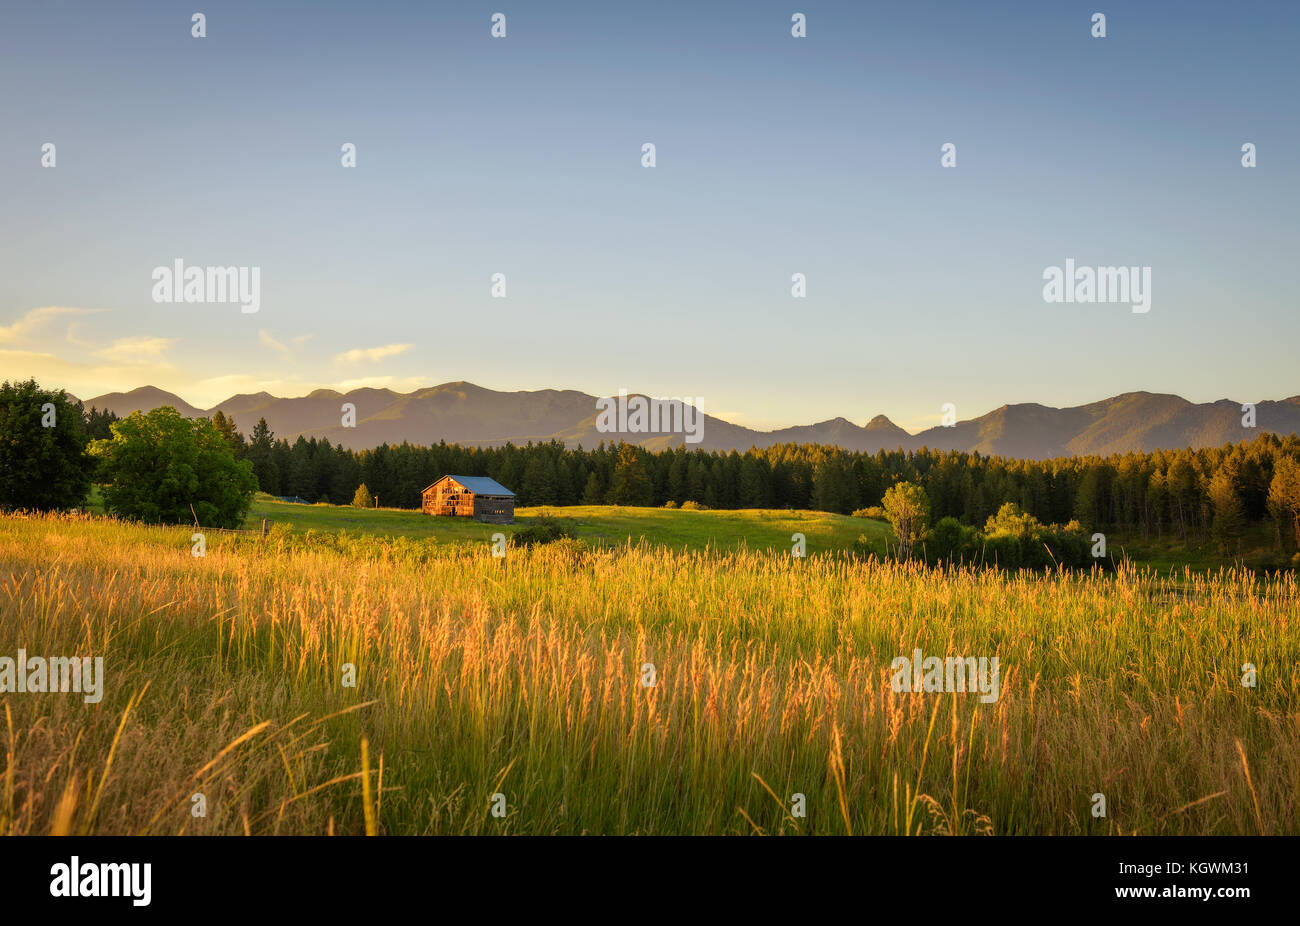 Atardecer de verano con un viejo granero en la zona rural de montana Foto de stock